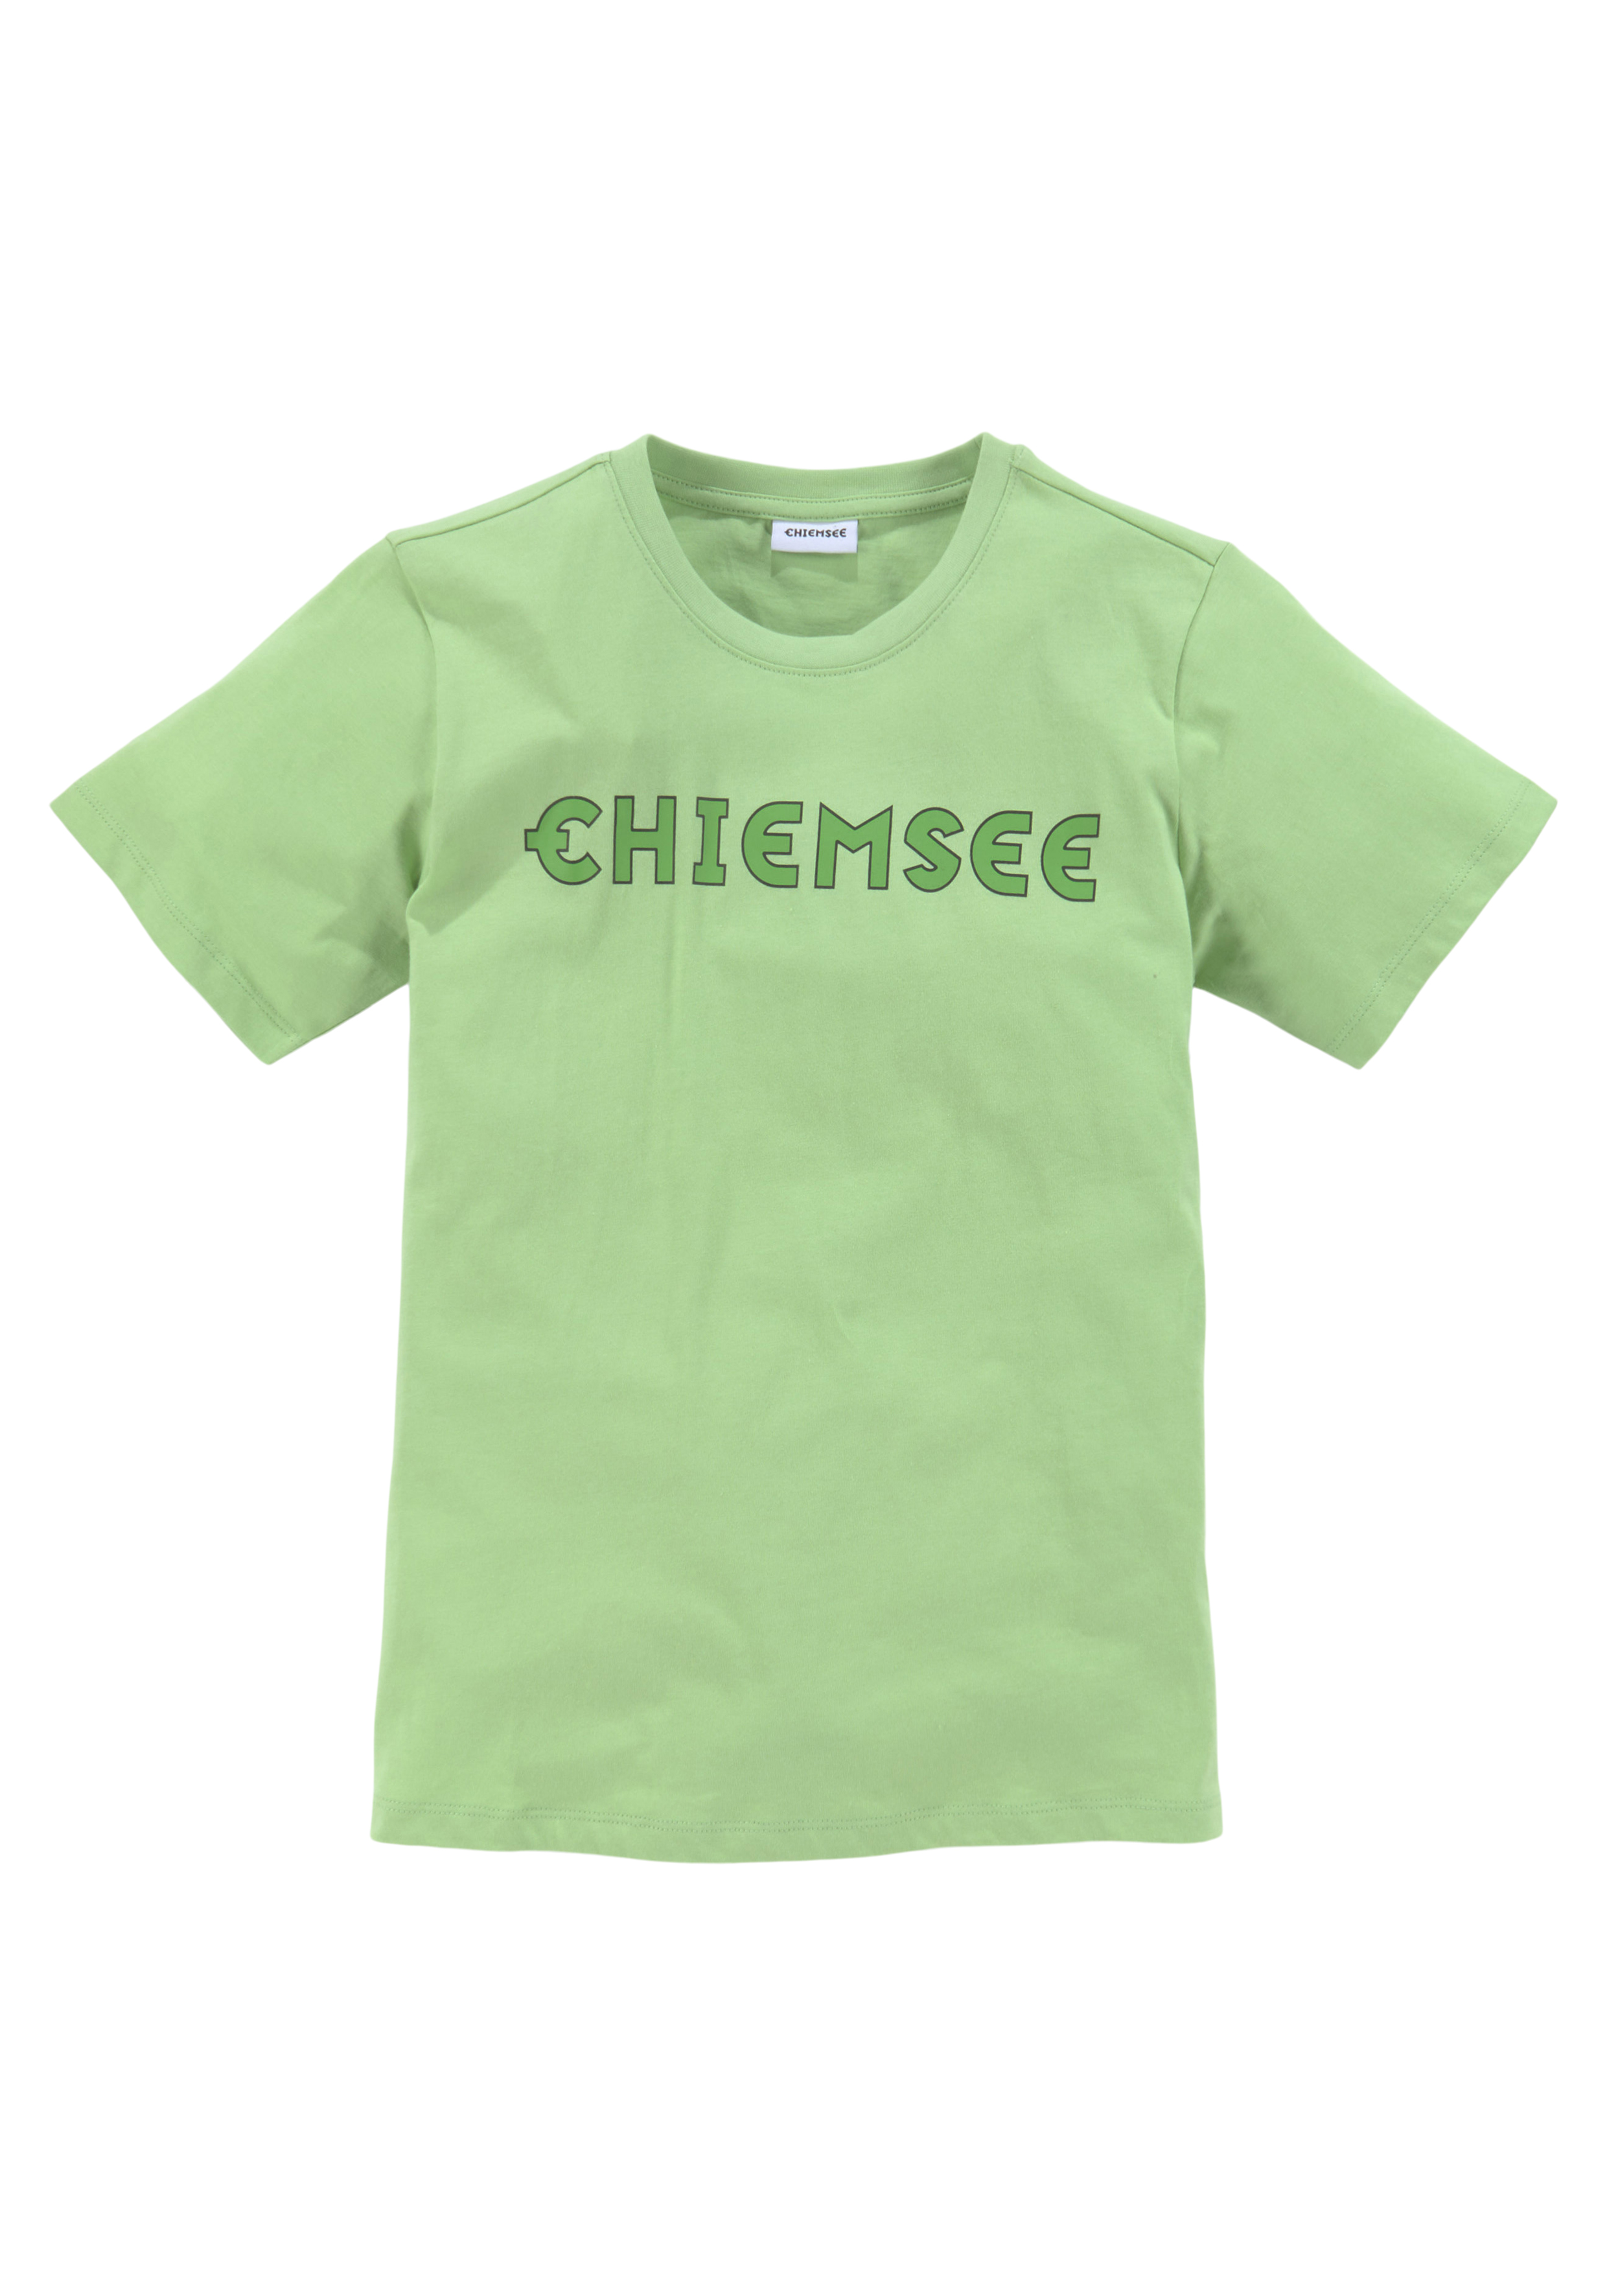 Chiemsee - günstige shoppen online Mode